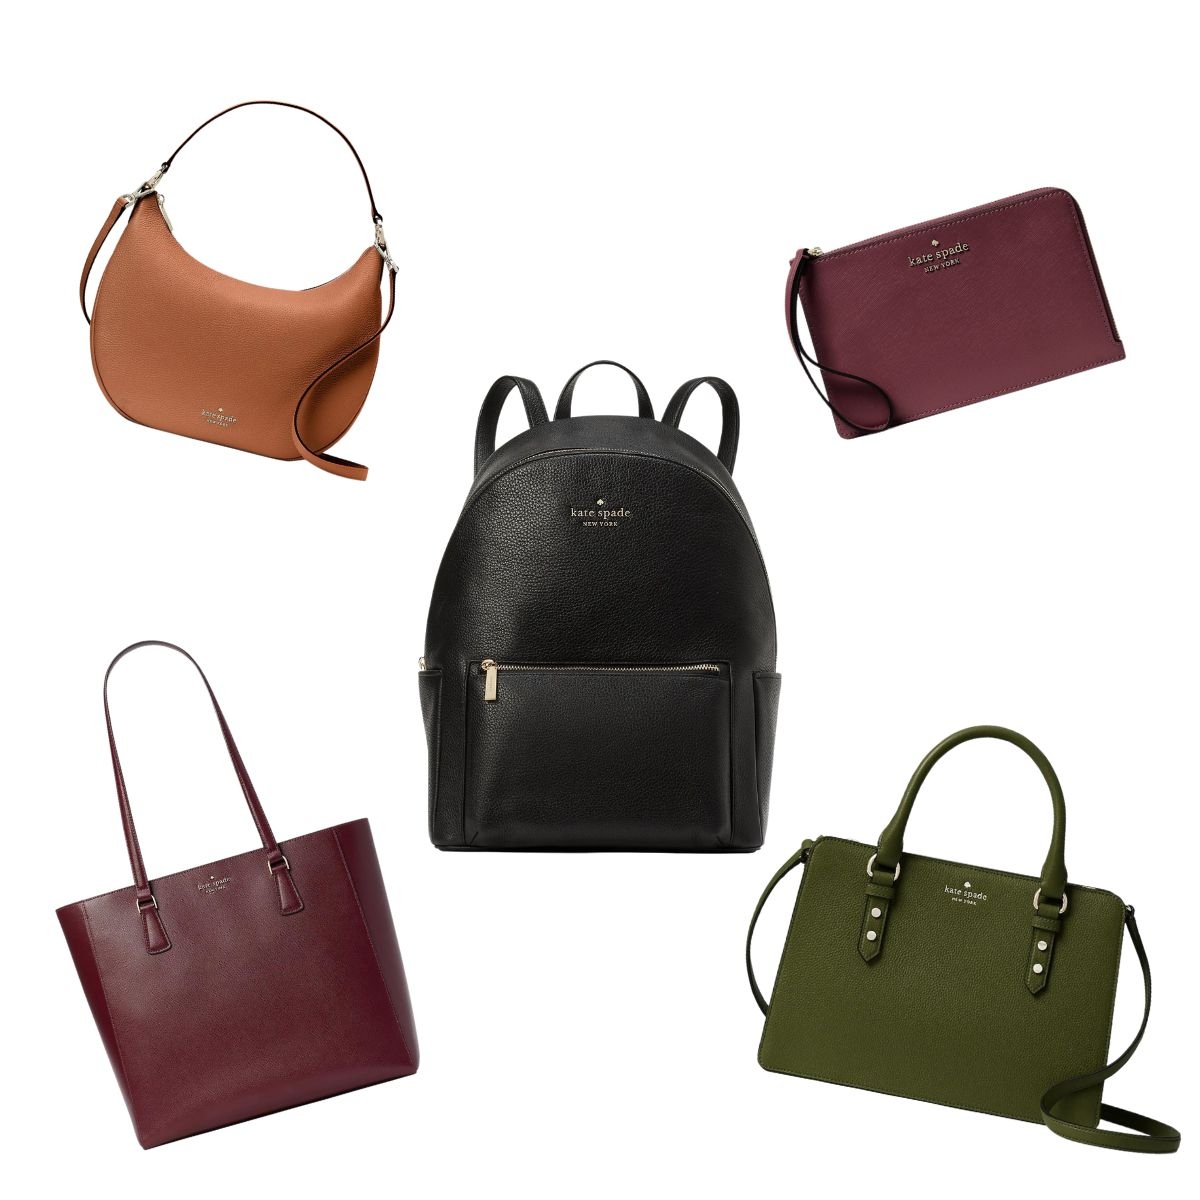 Kate Spade's Surprise Sale Is Back: Shop 70% Off Handbags & More